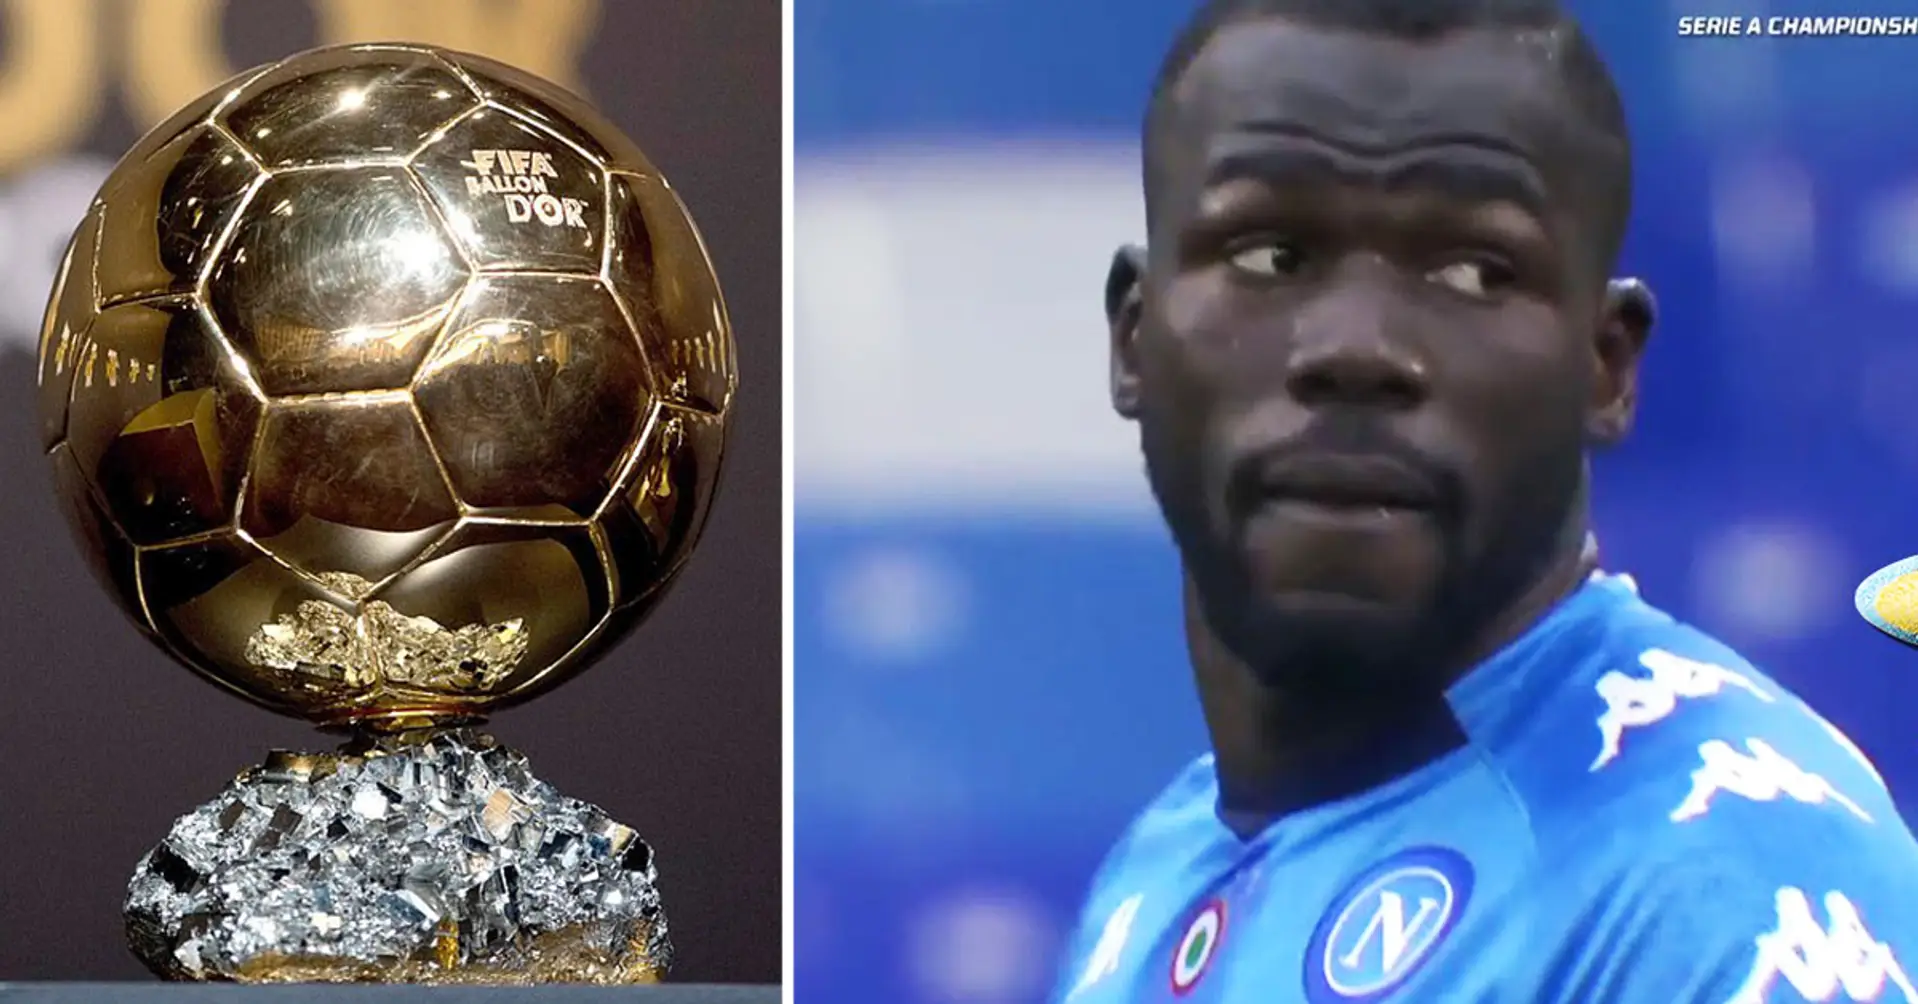 'Es una pena'. Koulibaly nombra a un jugador que debería haber sido incluido en la lista de finalistas del Balón de Oro